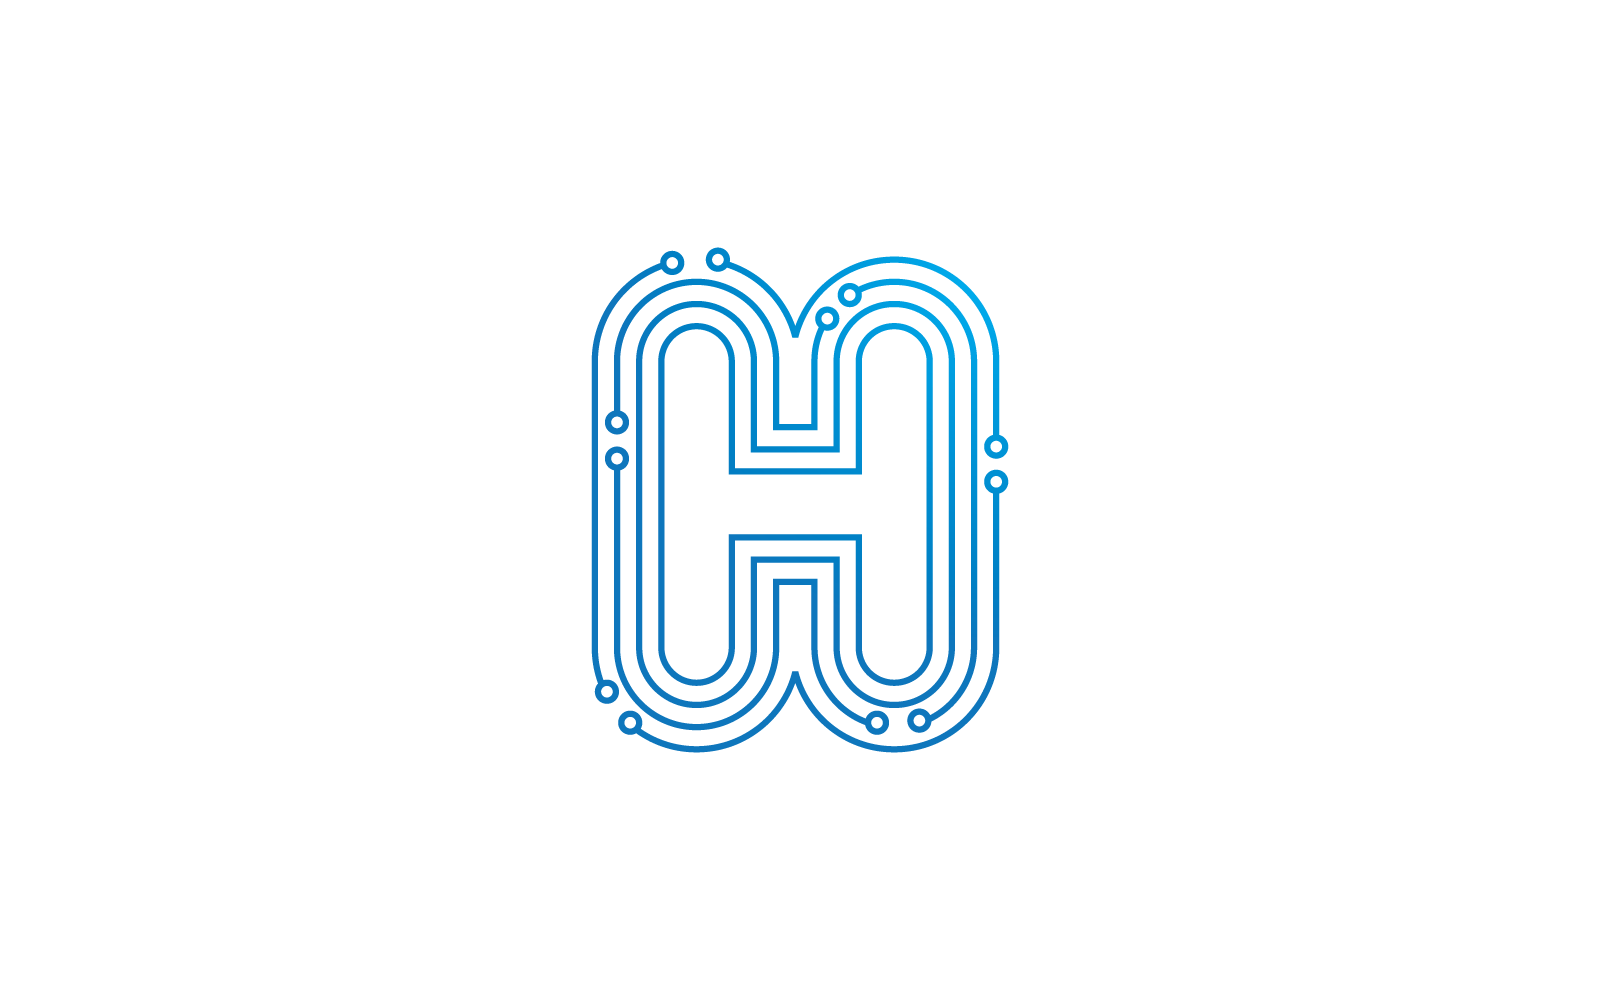 H eerste letter Circuit technologie illustratie logo vector sjabloon